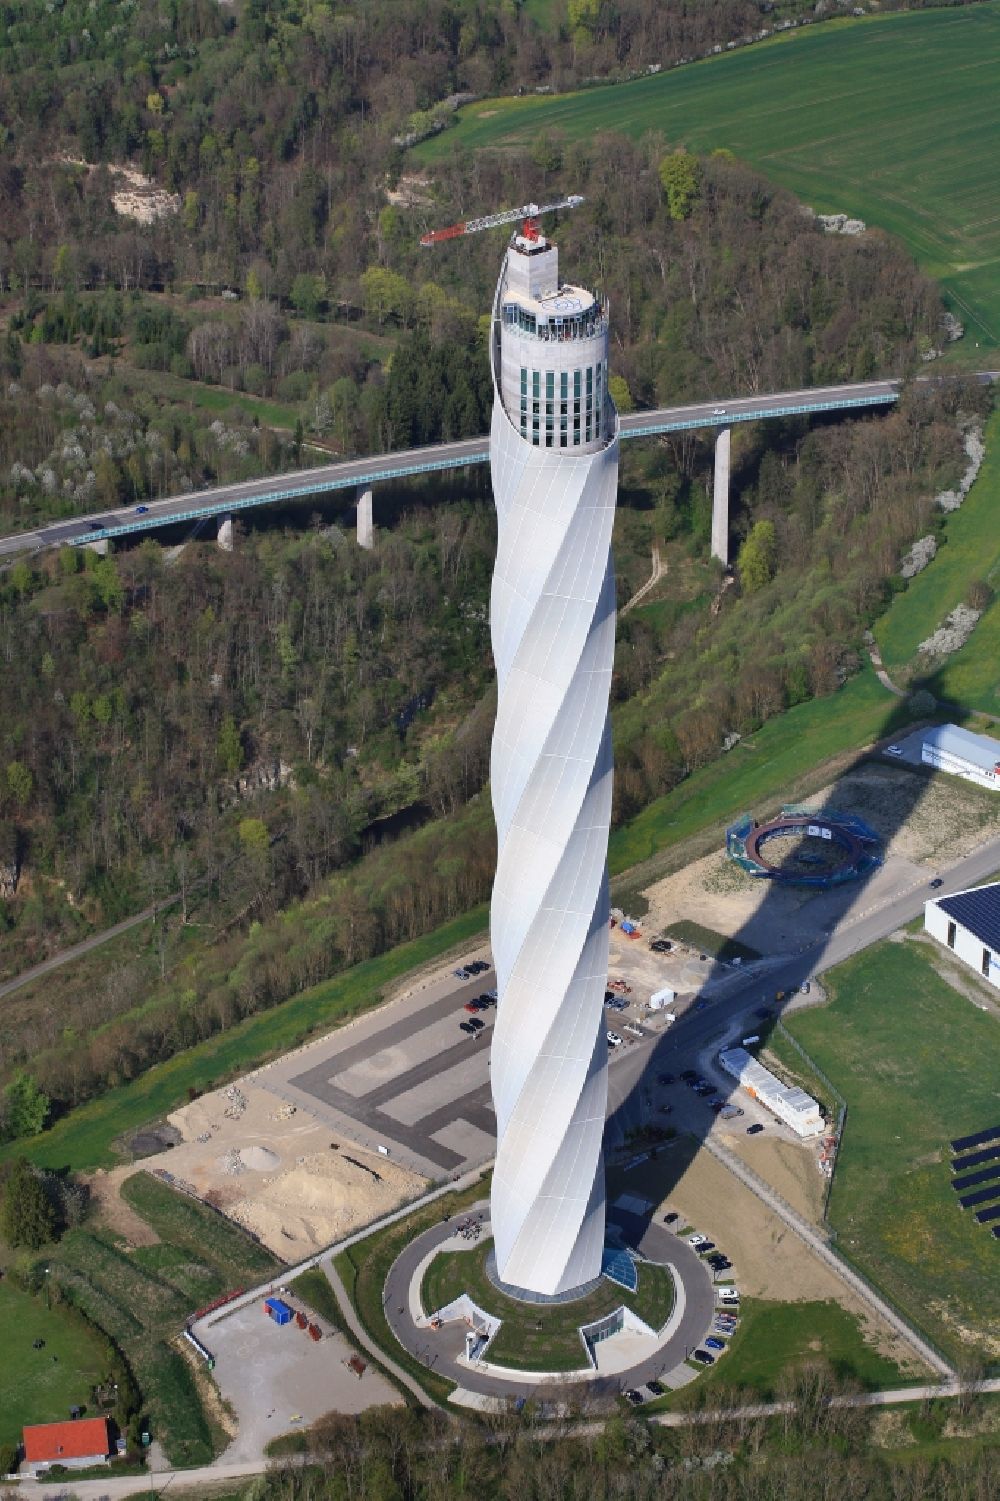 Rottweil von oben - ThyssenKrupp Aufzugstestturm in Rottweil im Bundesland Baden-Württemberg